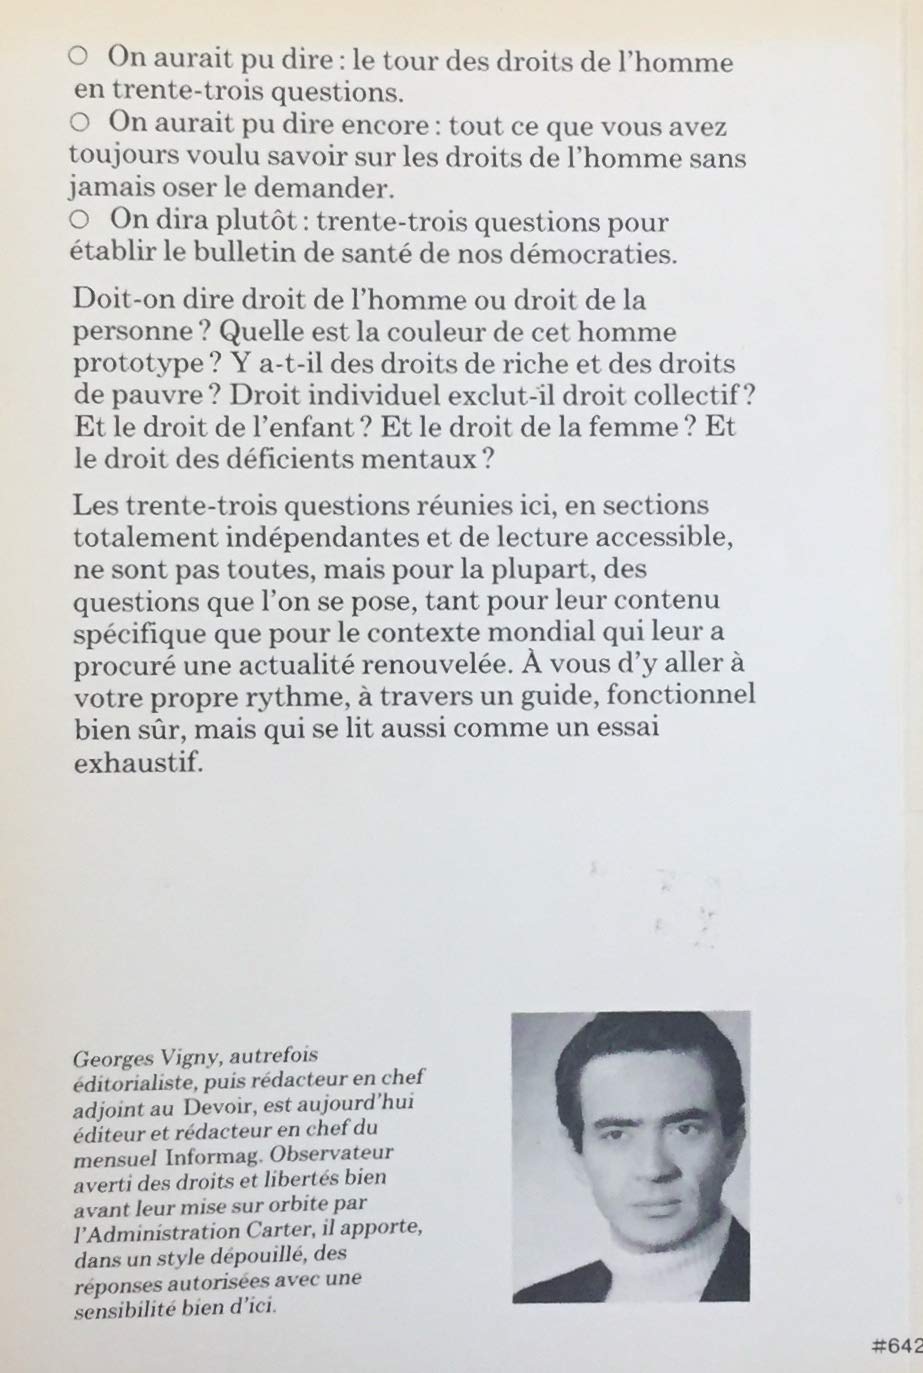 Le guide des droits de la personne en 33 questions (Georges Vigny)